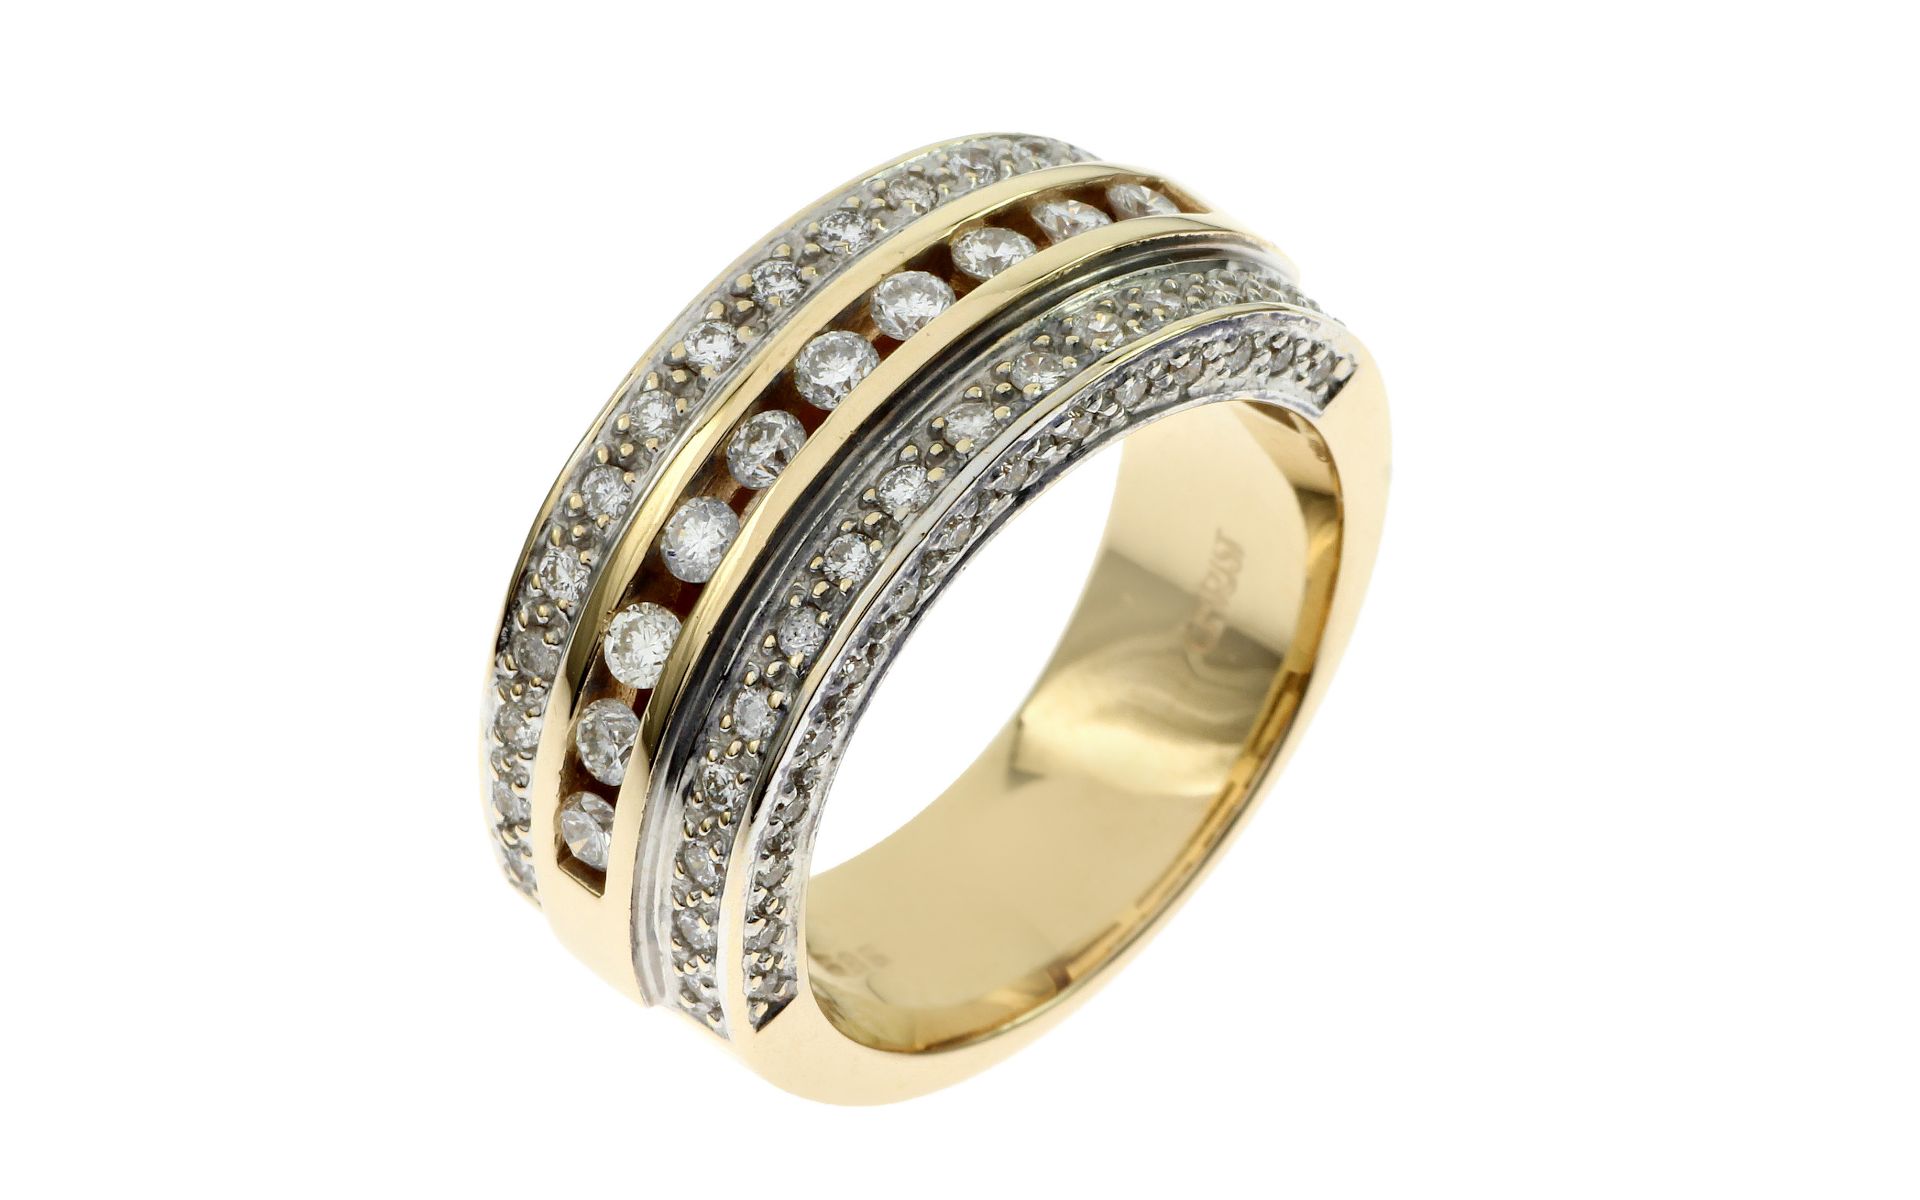 Ring 13.70 g 585/- Gelbgold und Weissgold mit Diamanten. 70 Diamanten zus. ca. 1.40 ct.- Ringröße 59